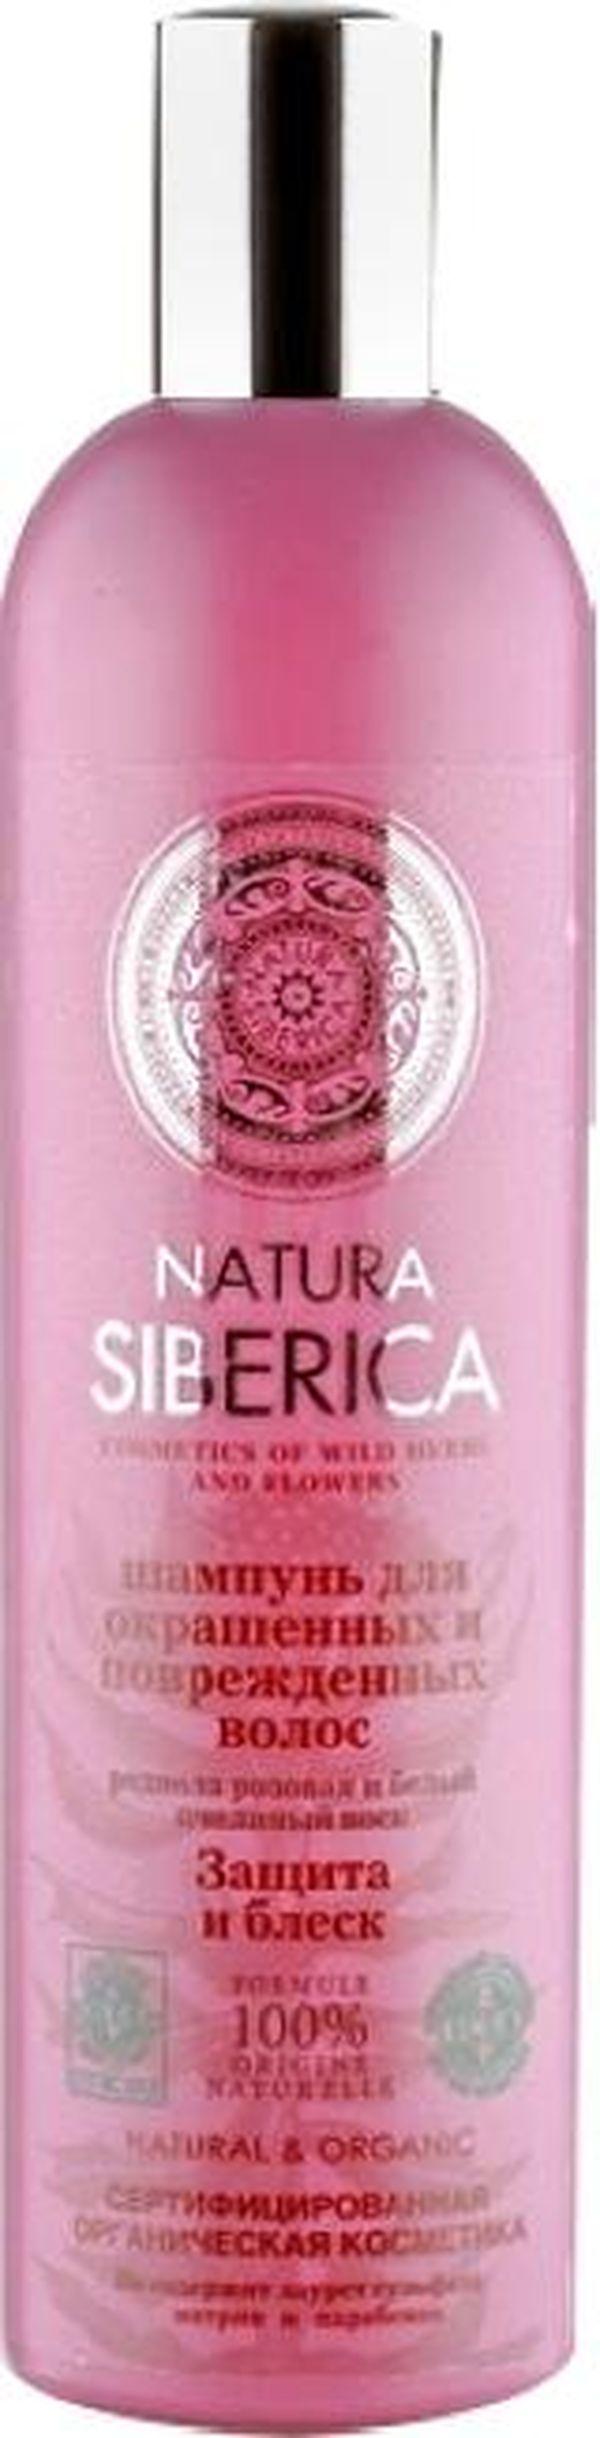 Шампунь для волос Natura Siberica защита и блеск 400мл